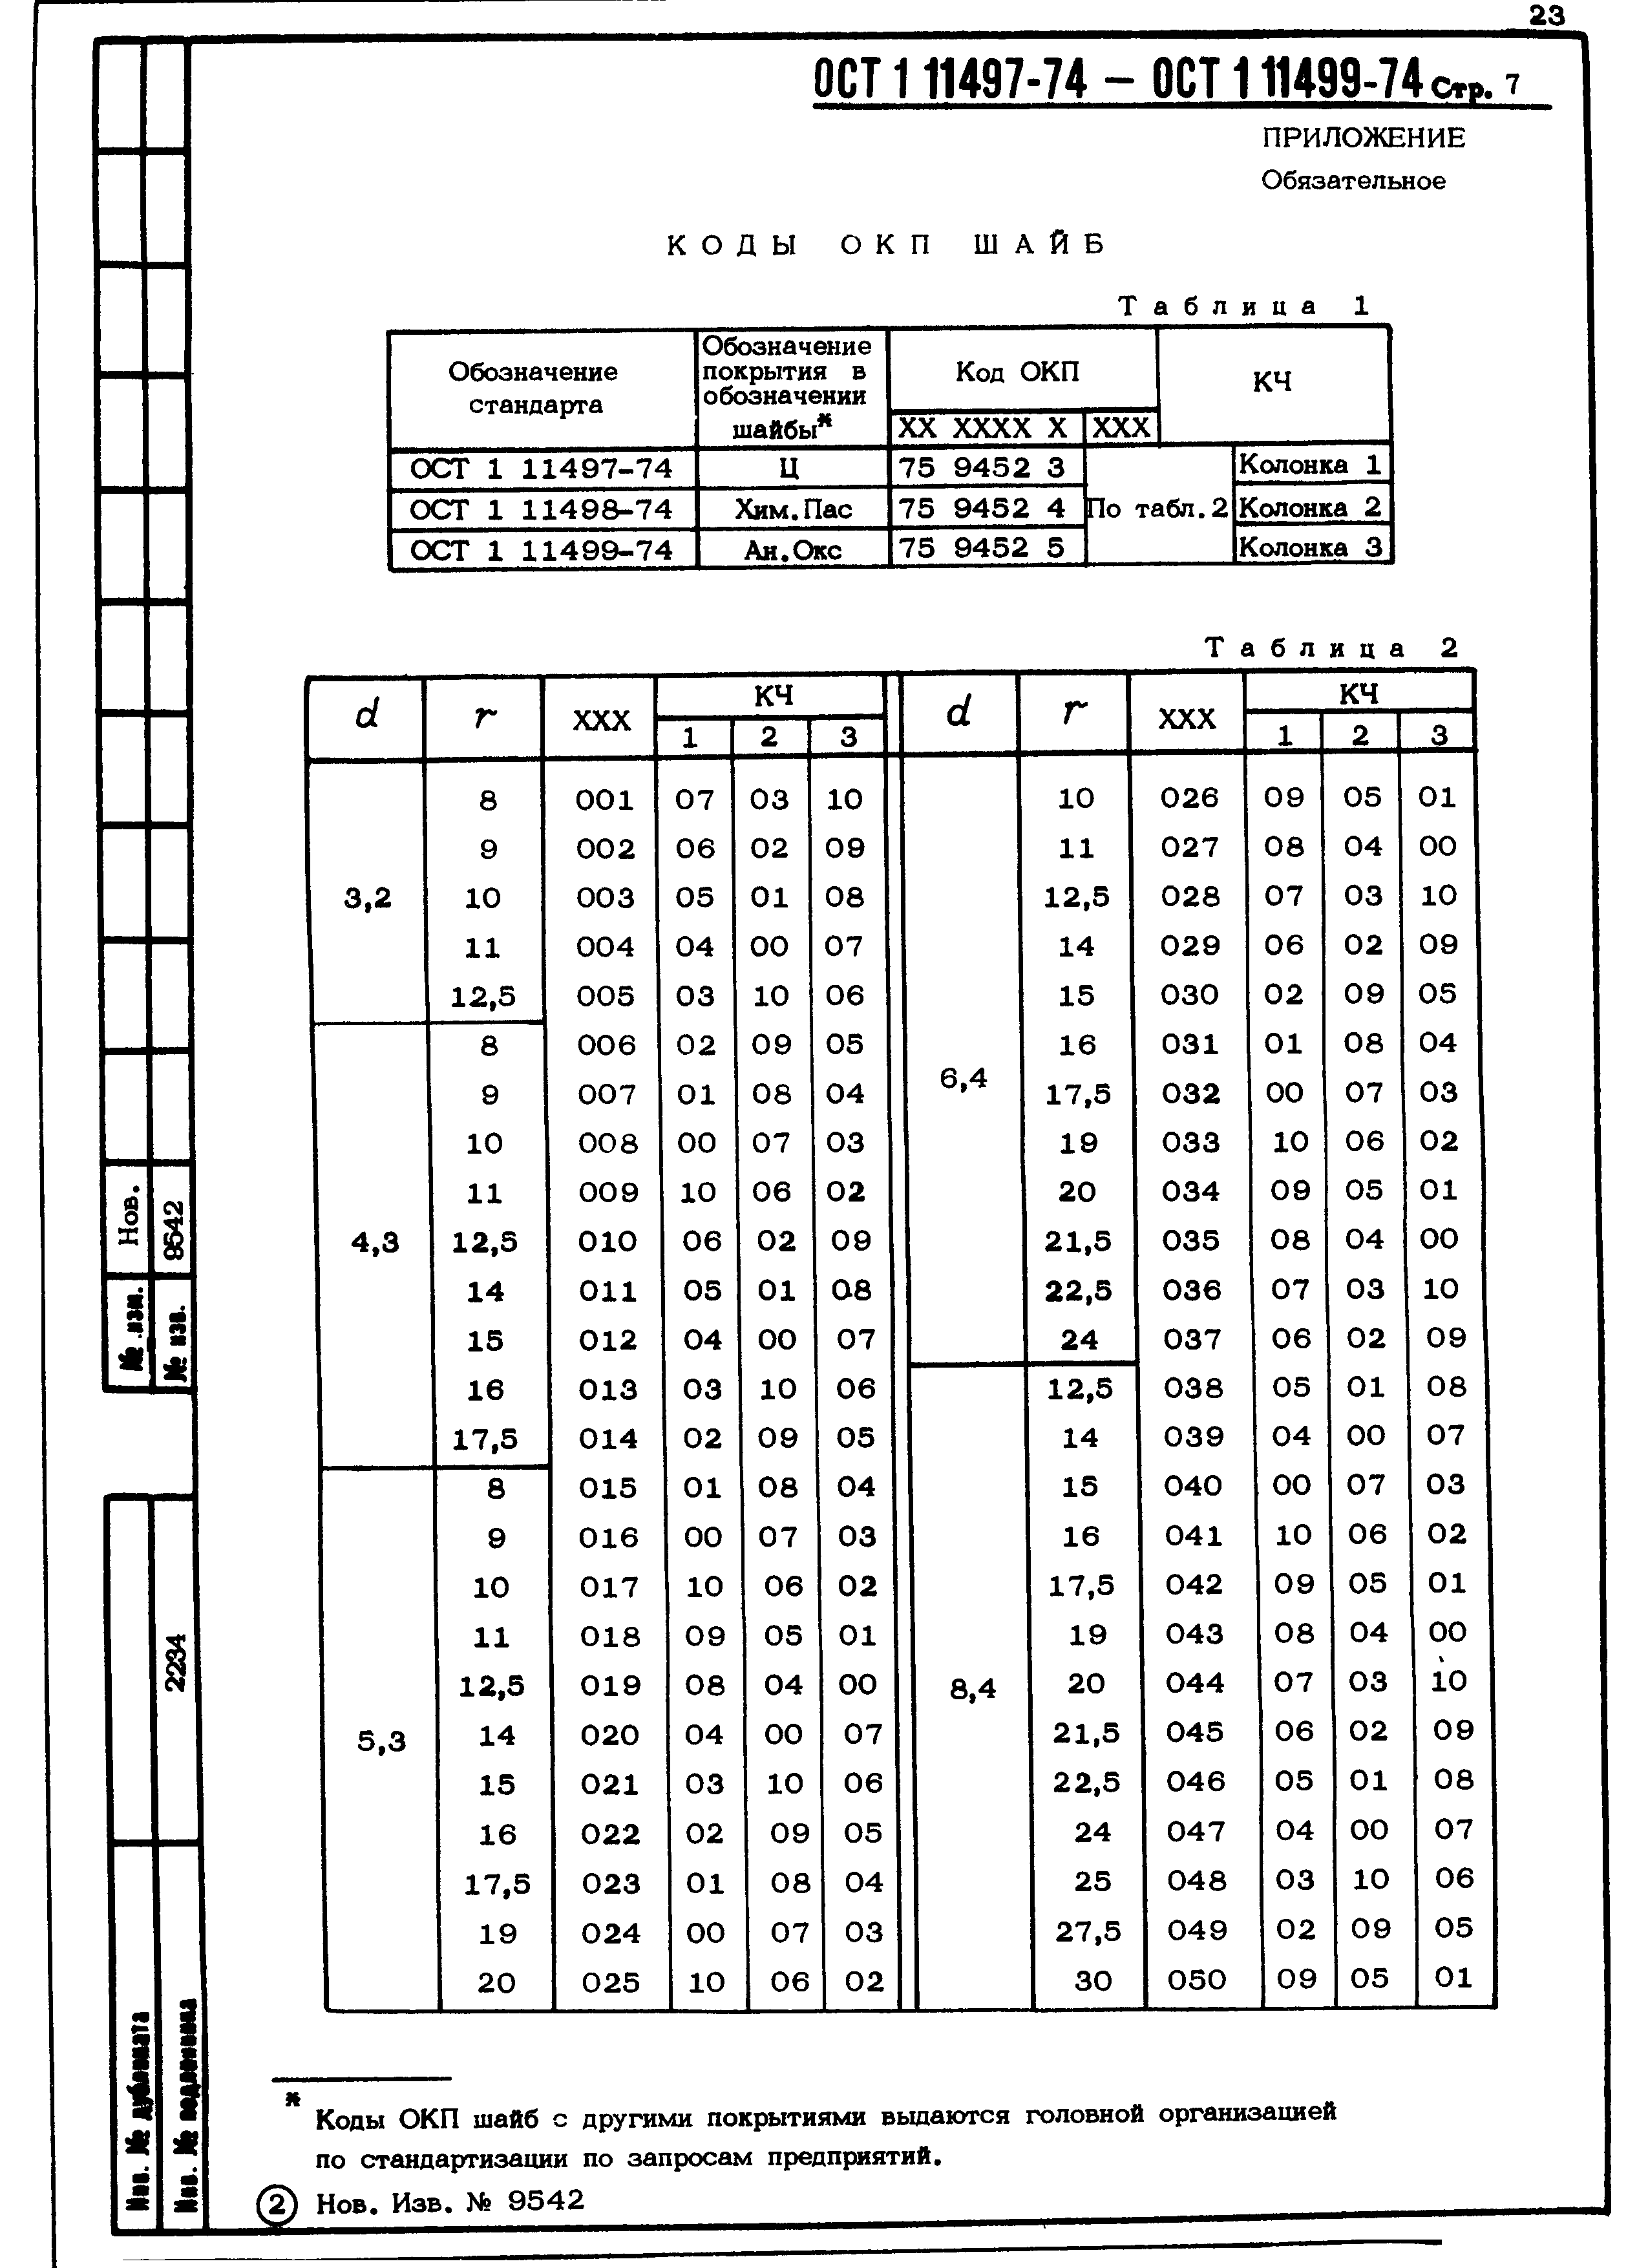 ОСТ 1 11497-74